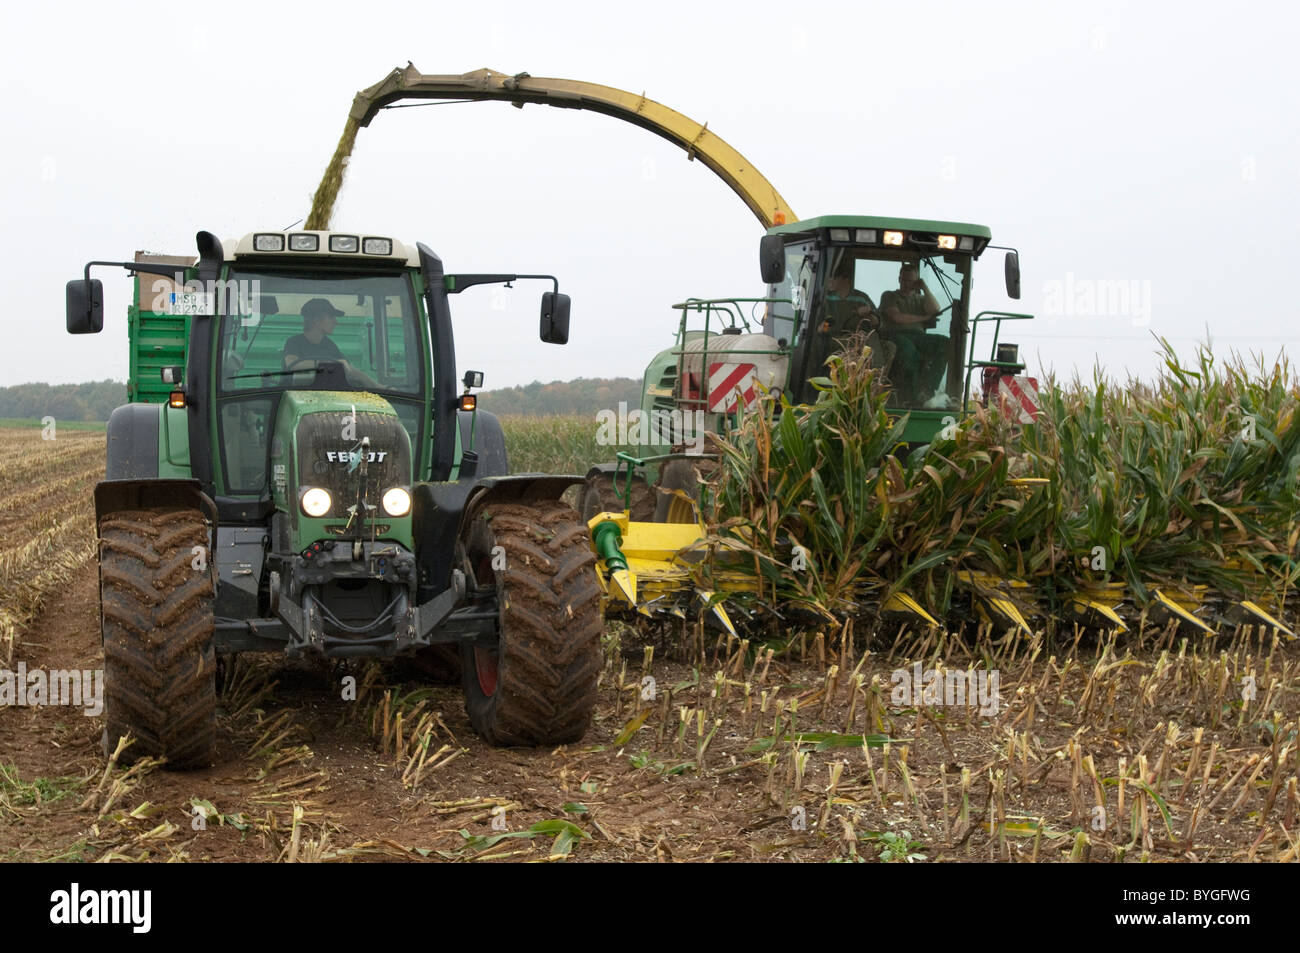 El maíz, el maíz (Zea mays). Cosecha de maíz. Un tractor con un remolque girando junto a una cosechadora de forraje autopropulsada. Foto de stock